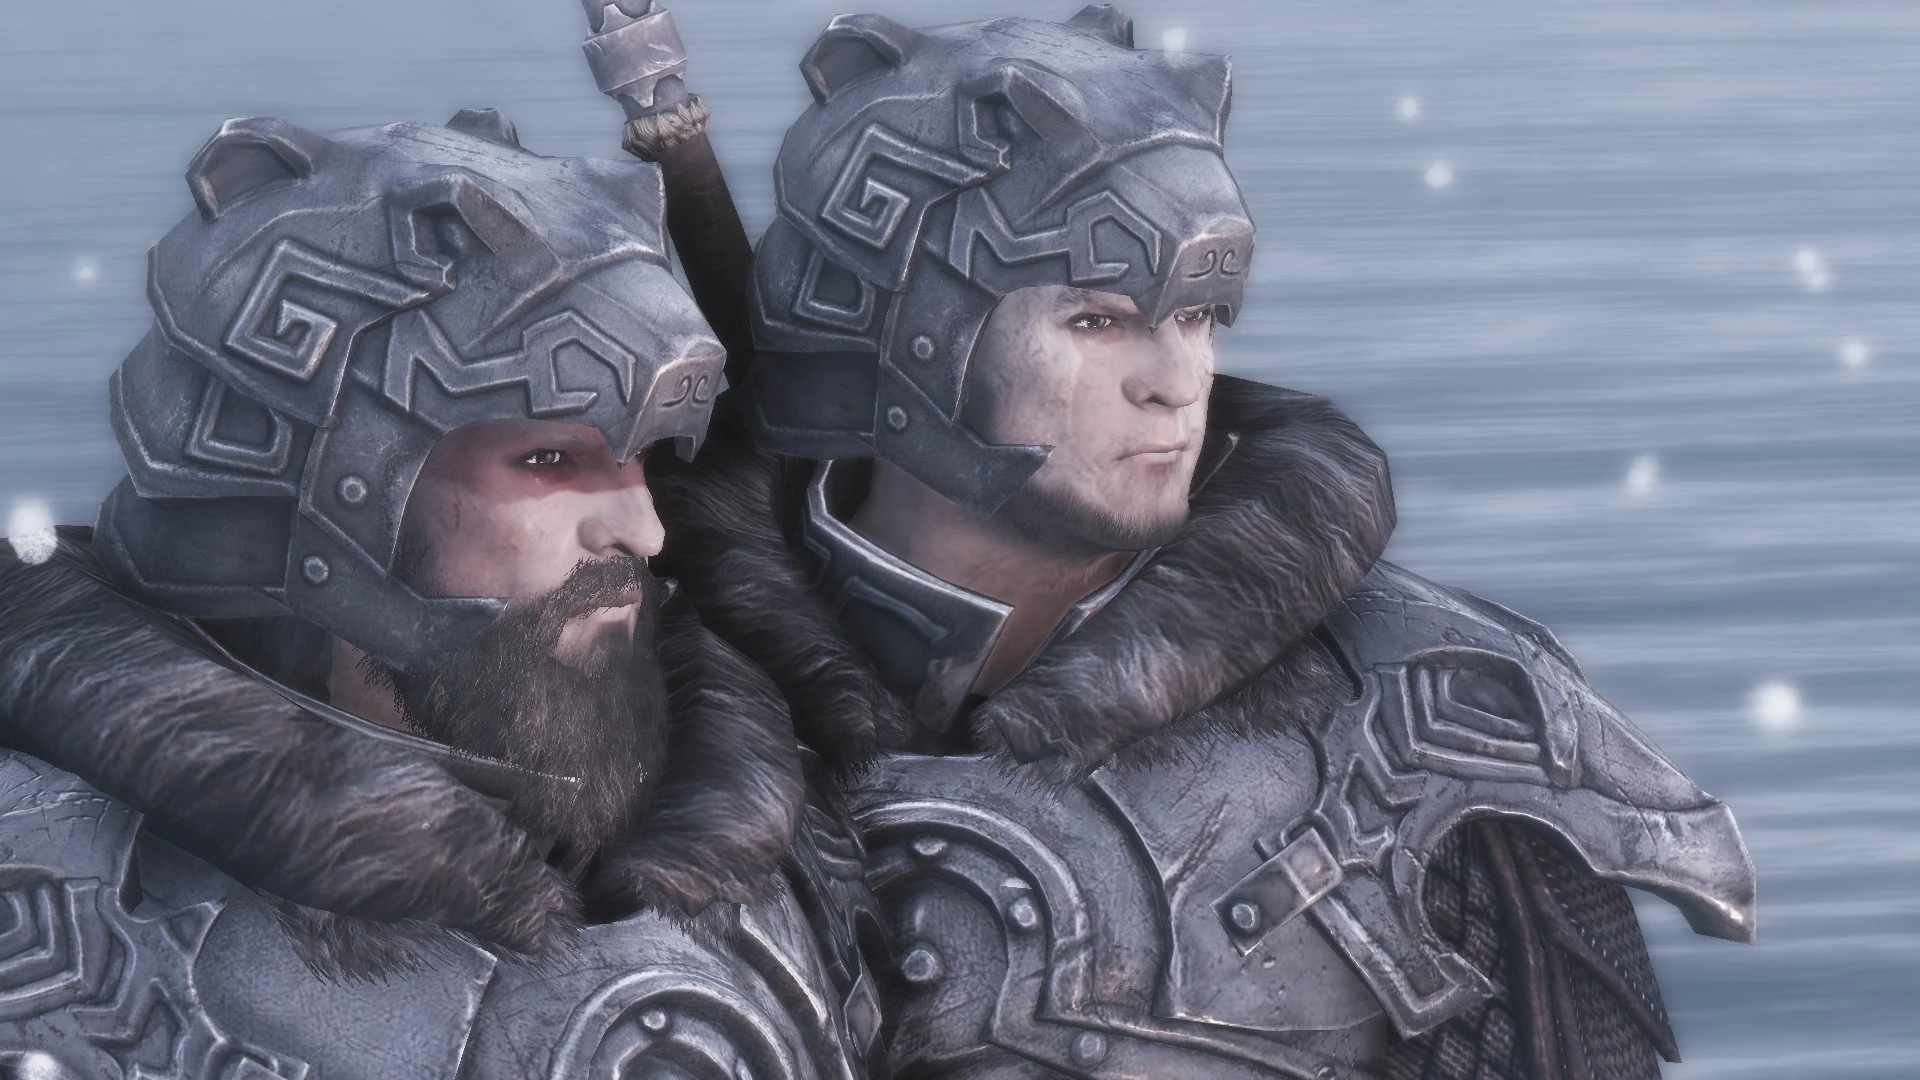 Skyrim nordic carved armor vs ebony